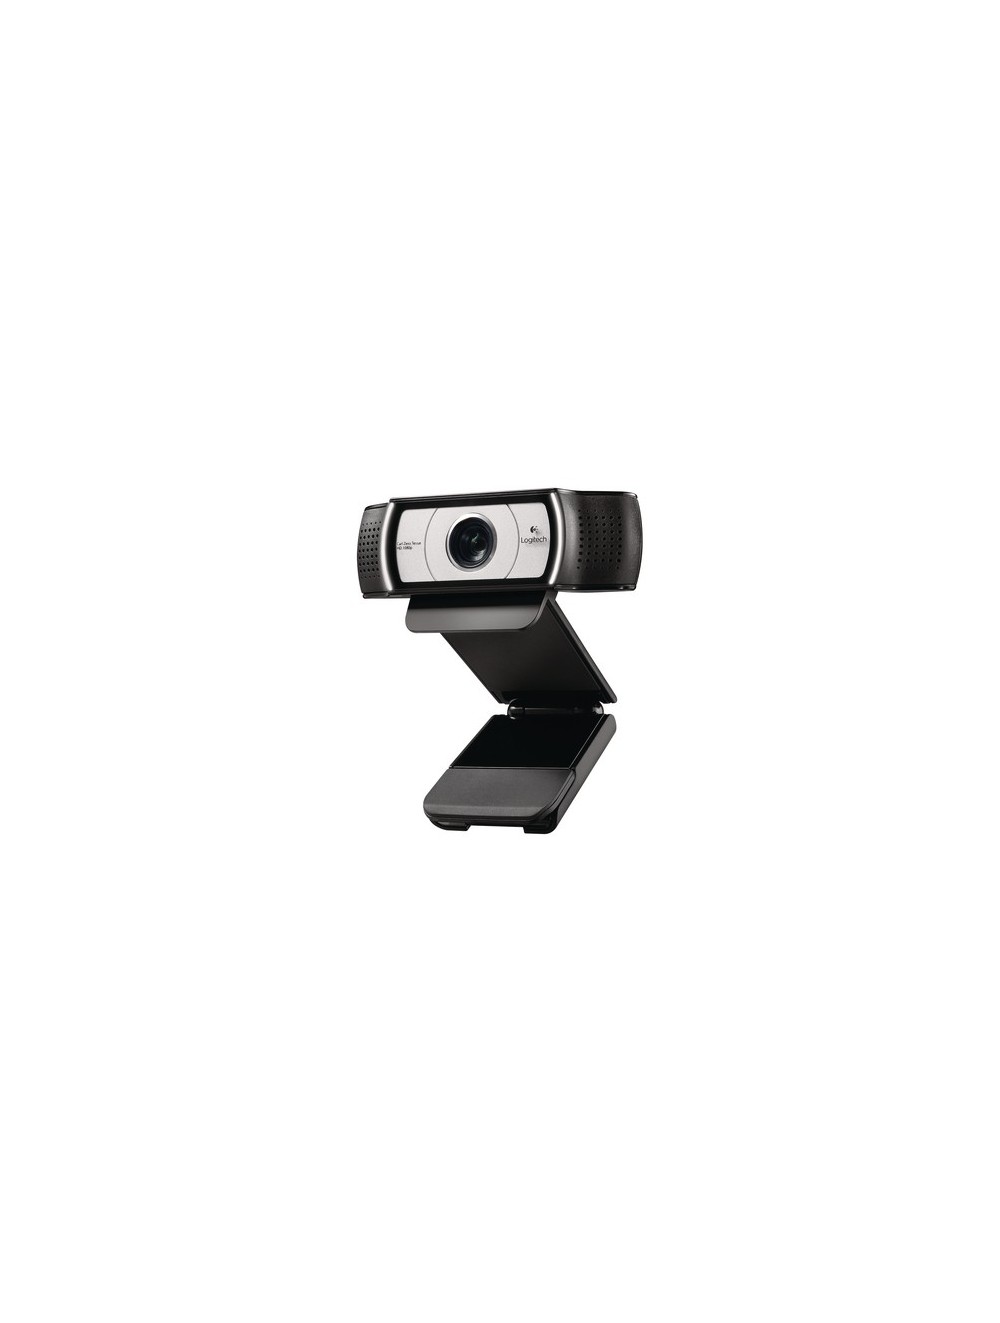 Logitech C930e Webcam Full HD 1080p/30fps, 90°FoV, 4x Zoom